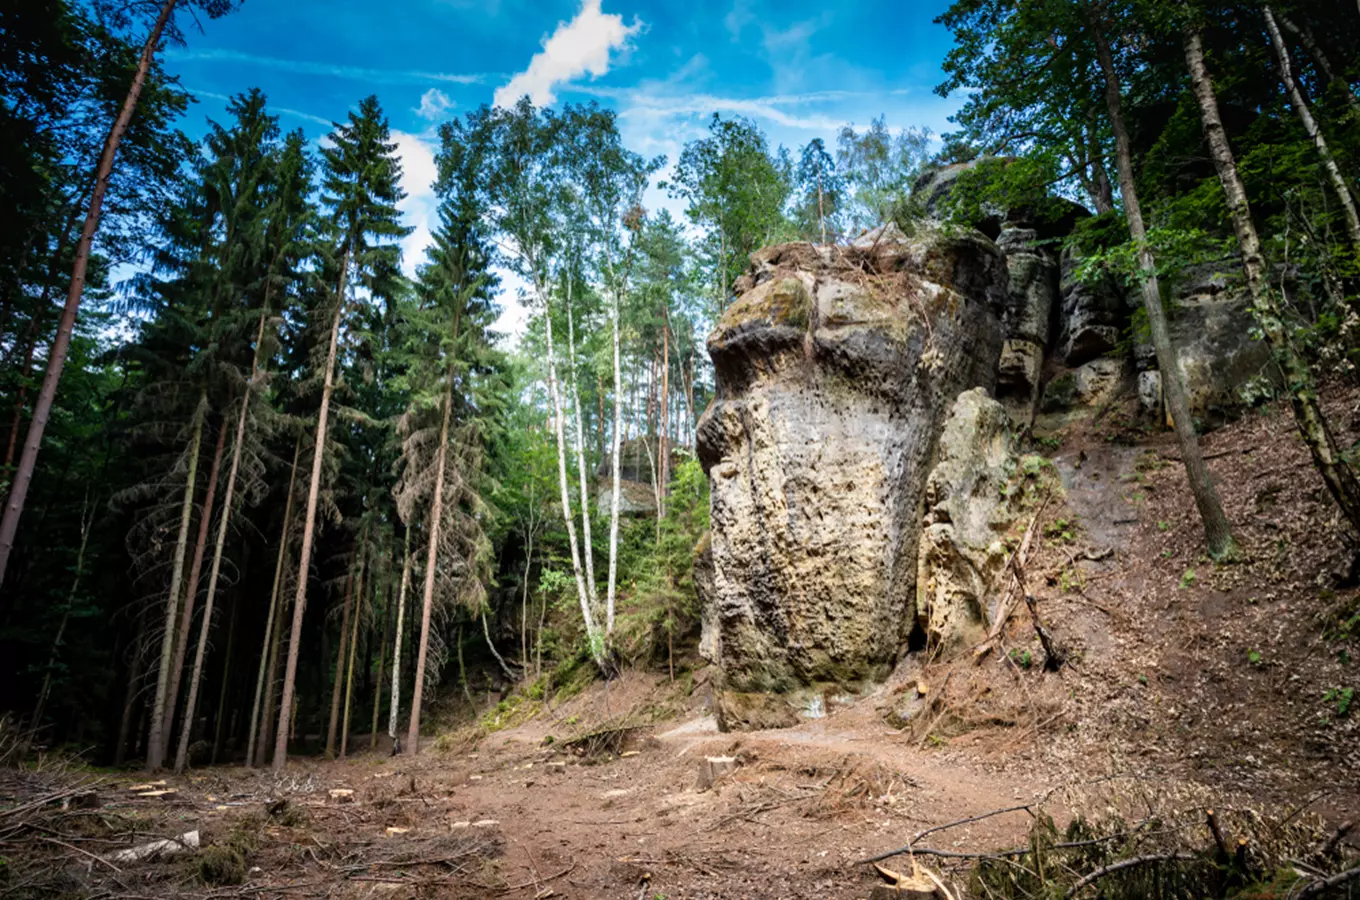 Objevte nejkrásnější místa Kokořínska: romantické lesy, pískovcové skály a skalní útvary 